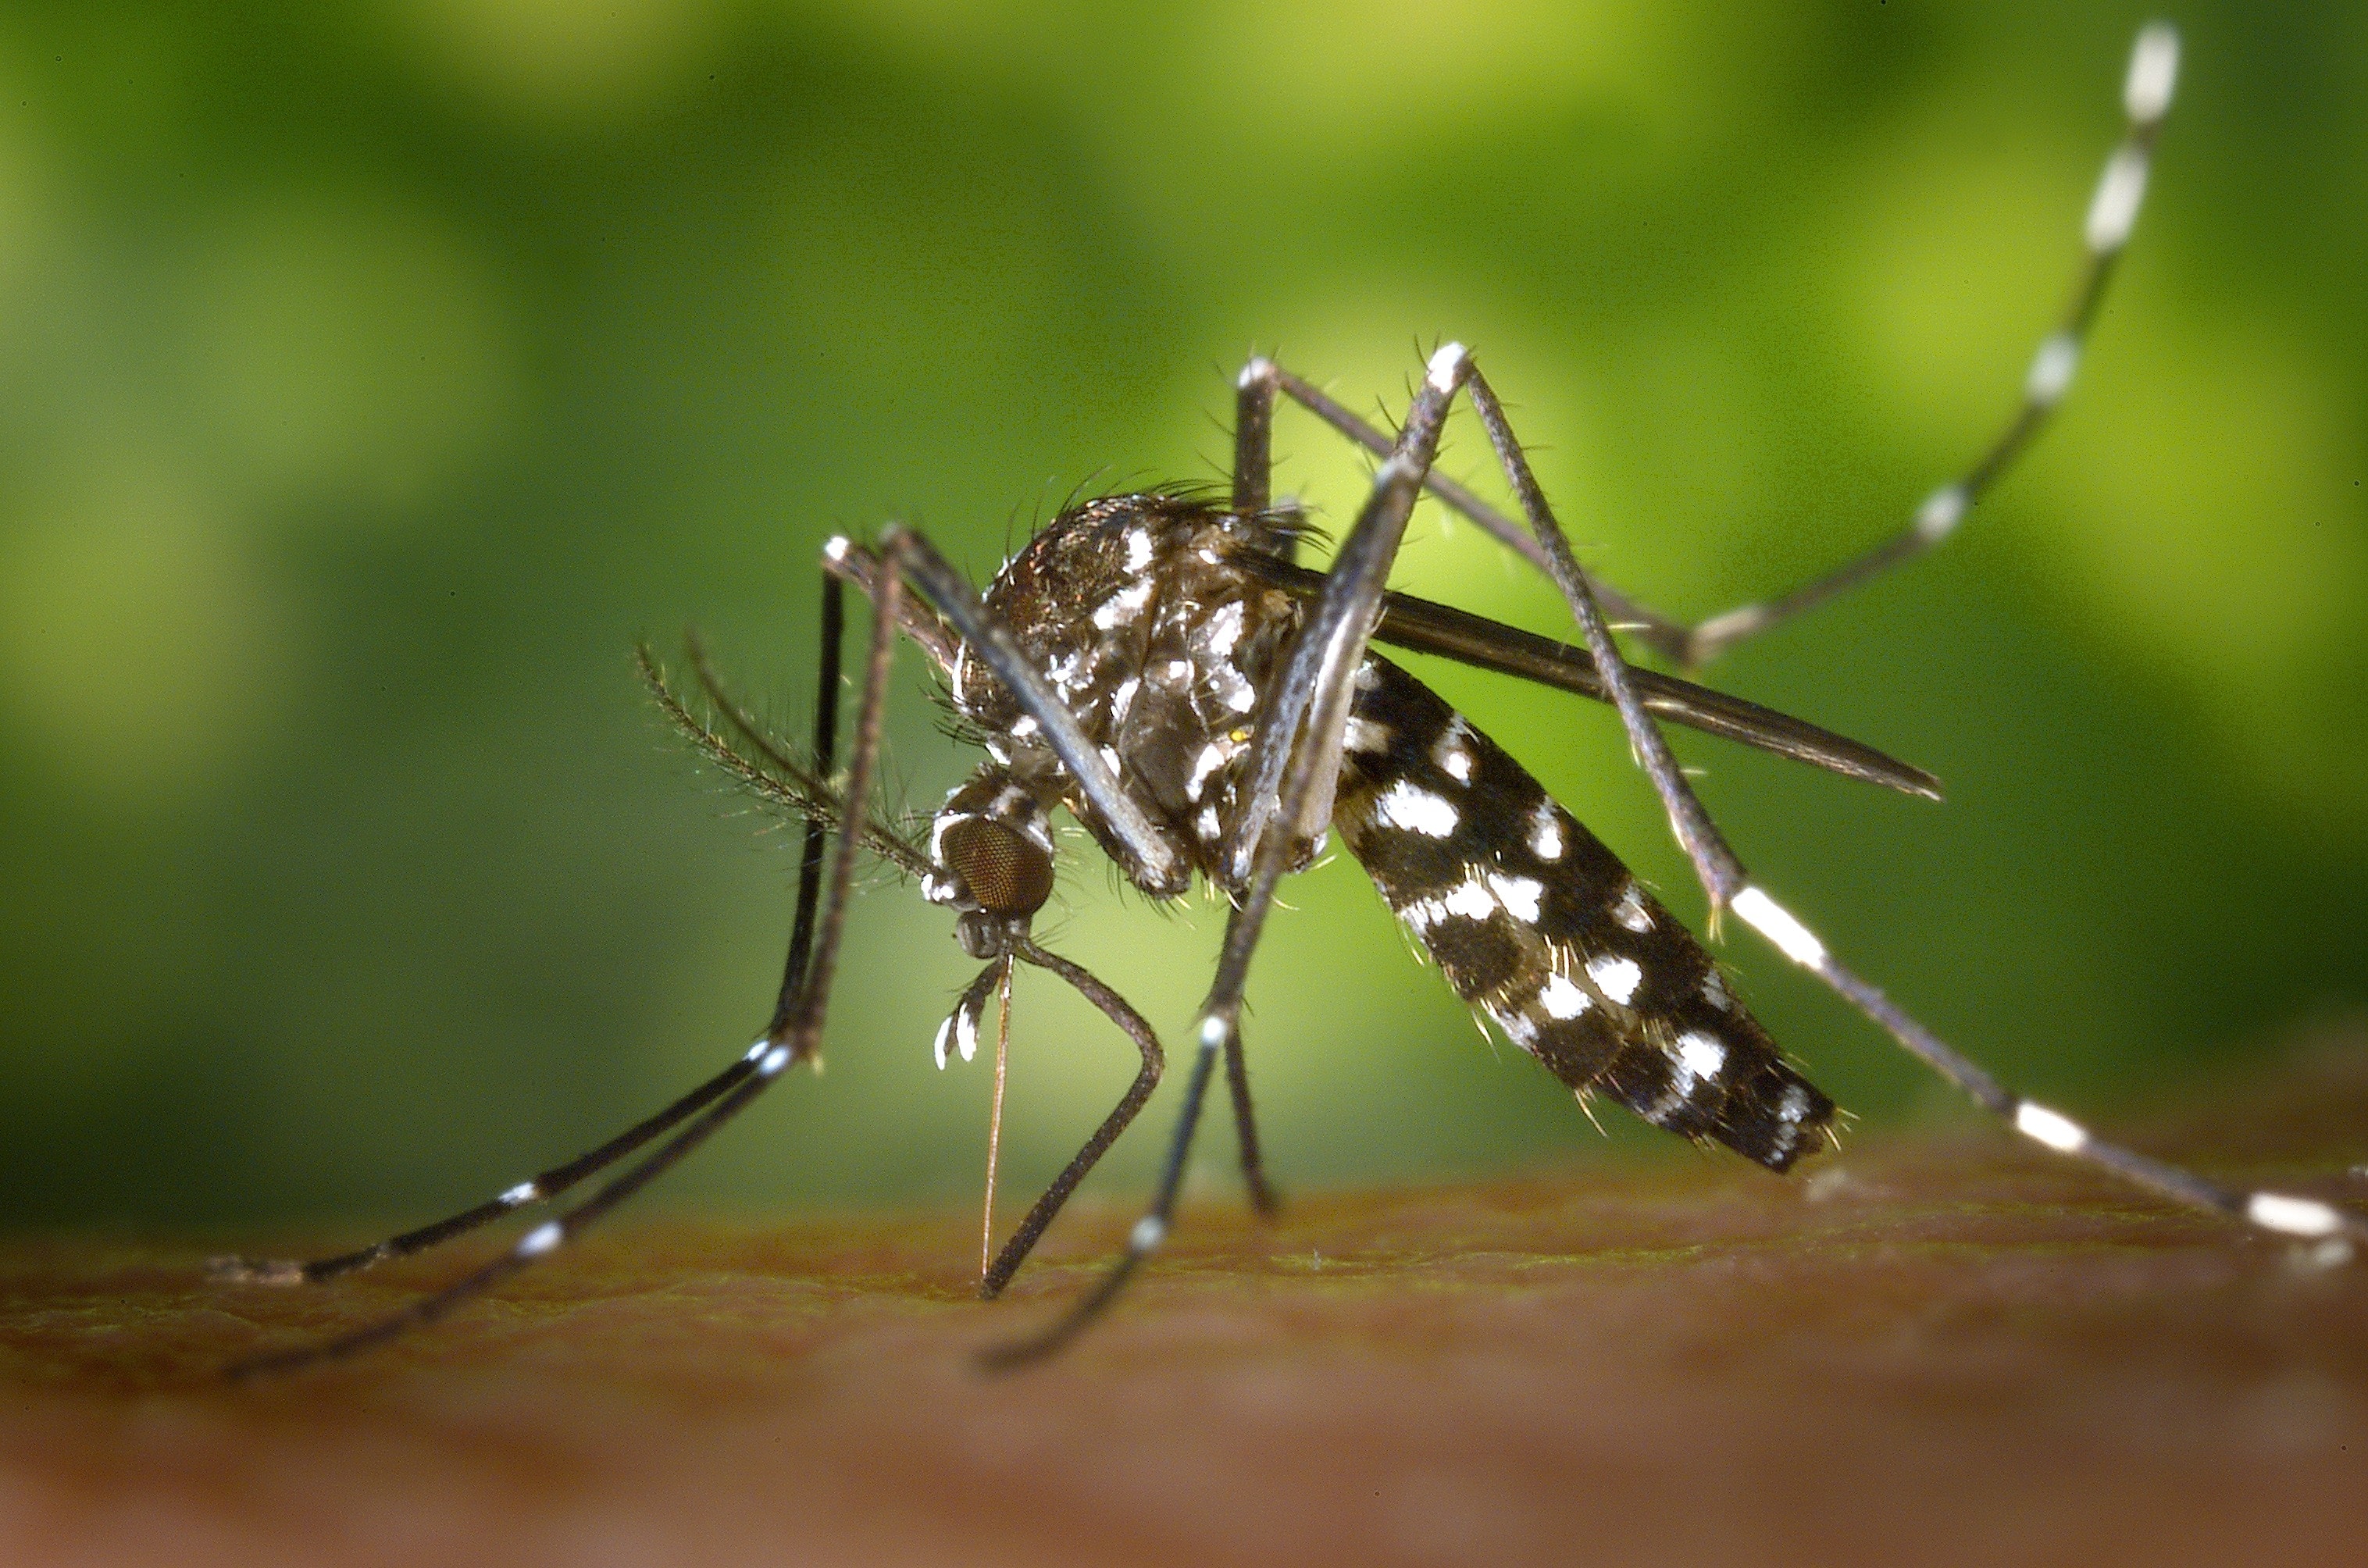 Des tests récents ont confirmé la présence du virus du Nil occidental sur des moustiques à Ottawa.